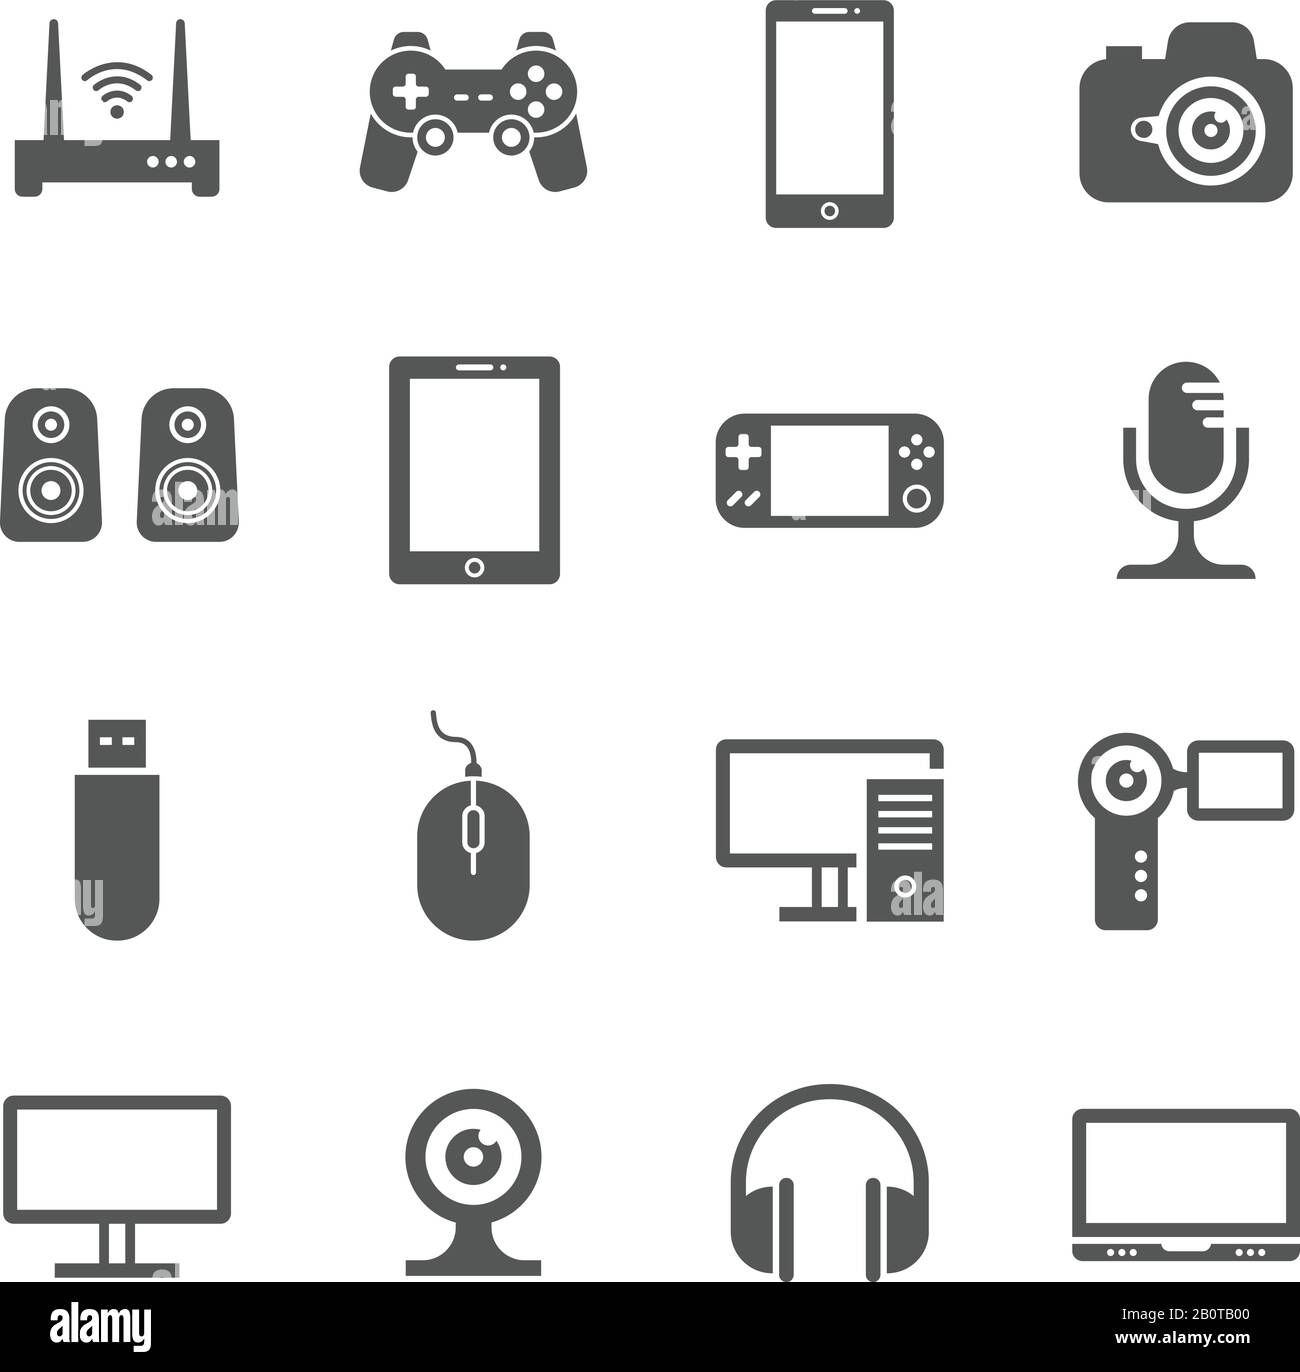 Computergadgets und Vektorsymbole für digitale Handheld-Geräte. Video und Audio von elektronischen Geräten, Abbildung von Geräten Stock Vektor